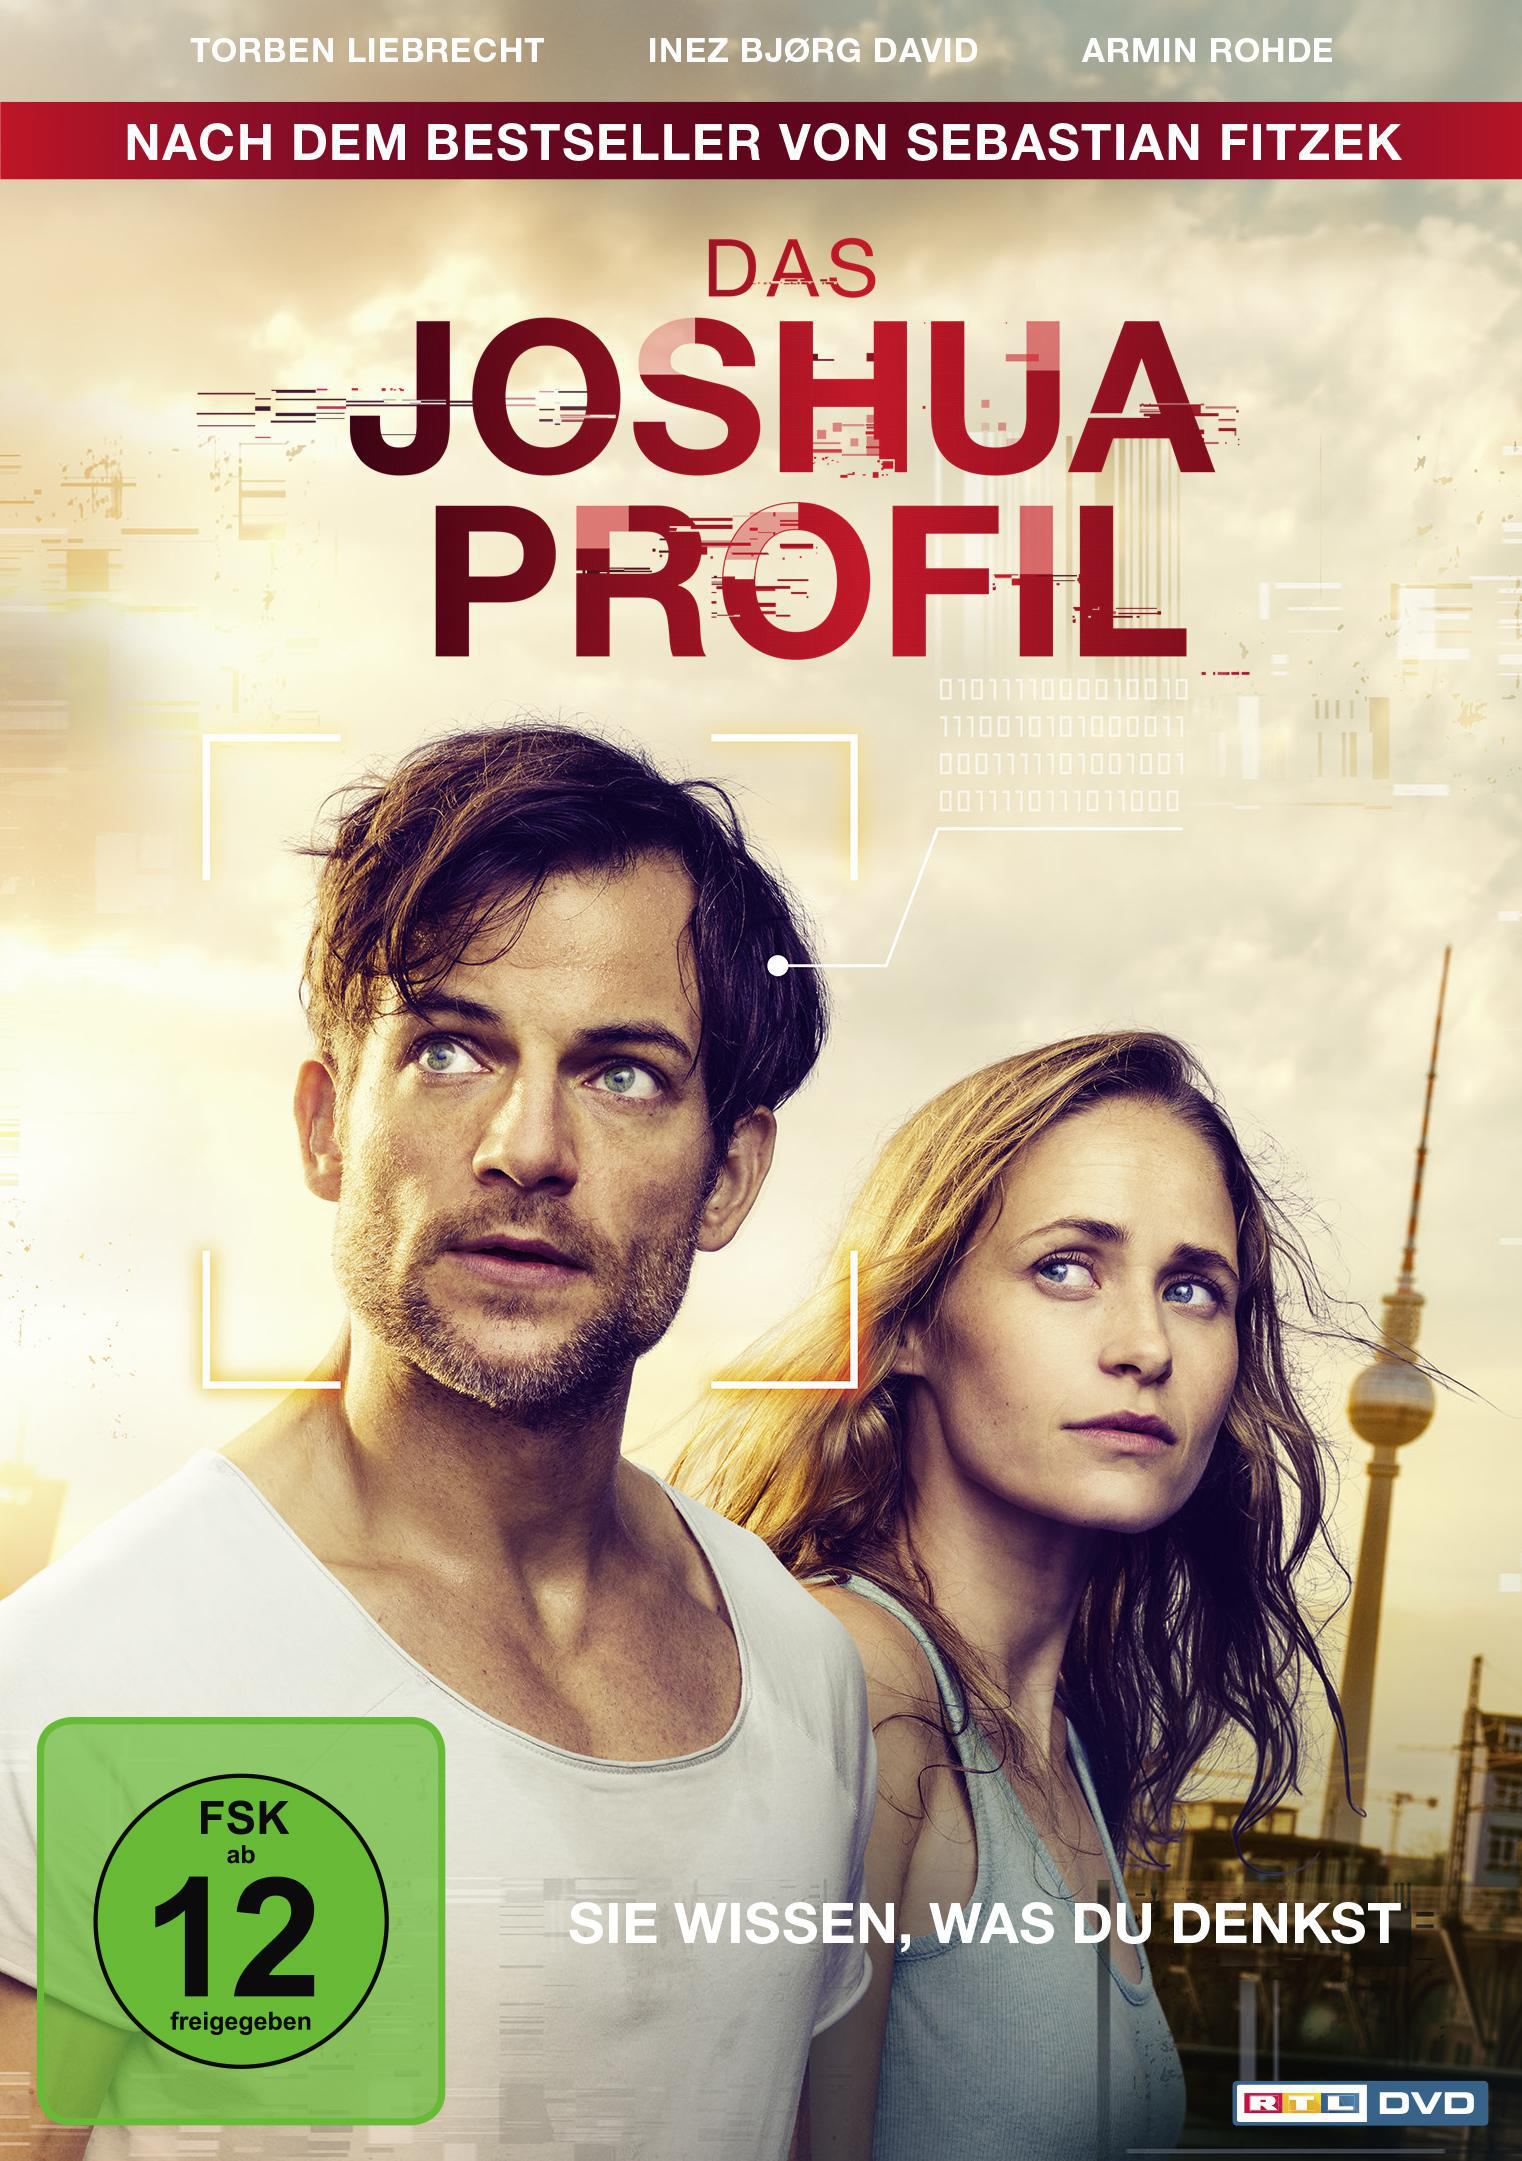 Das DVD Joshua-Profil